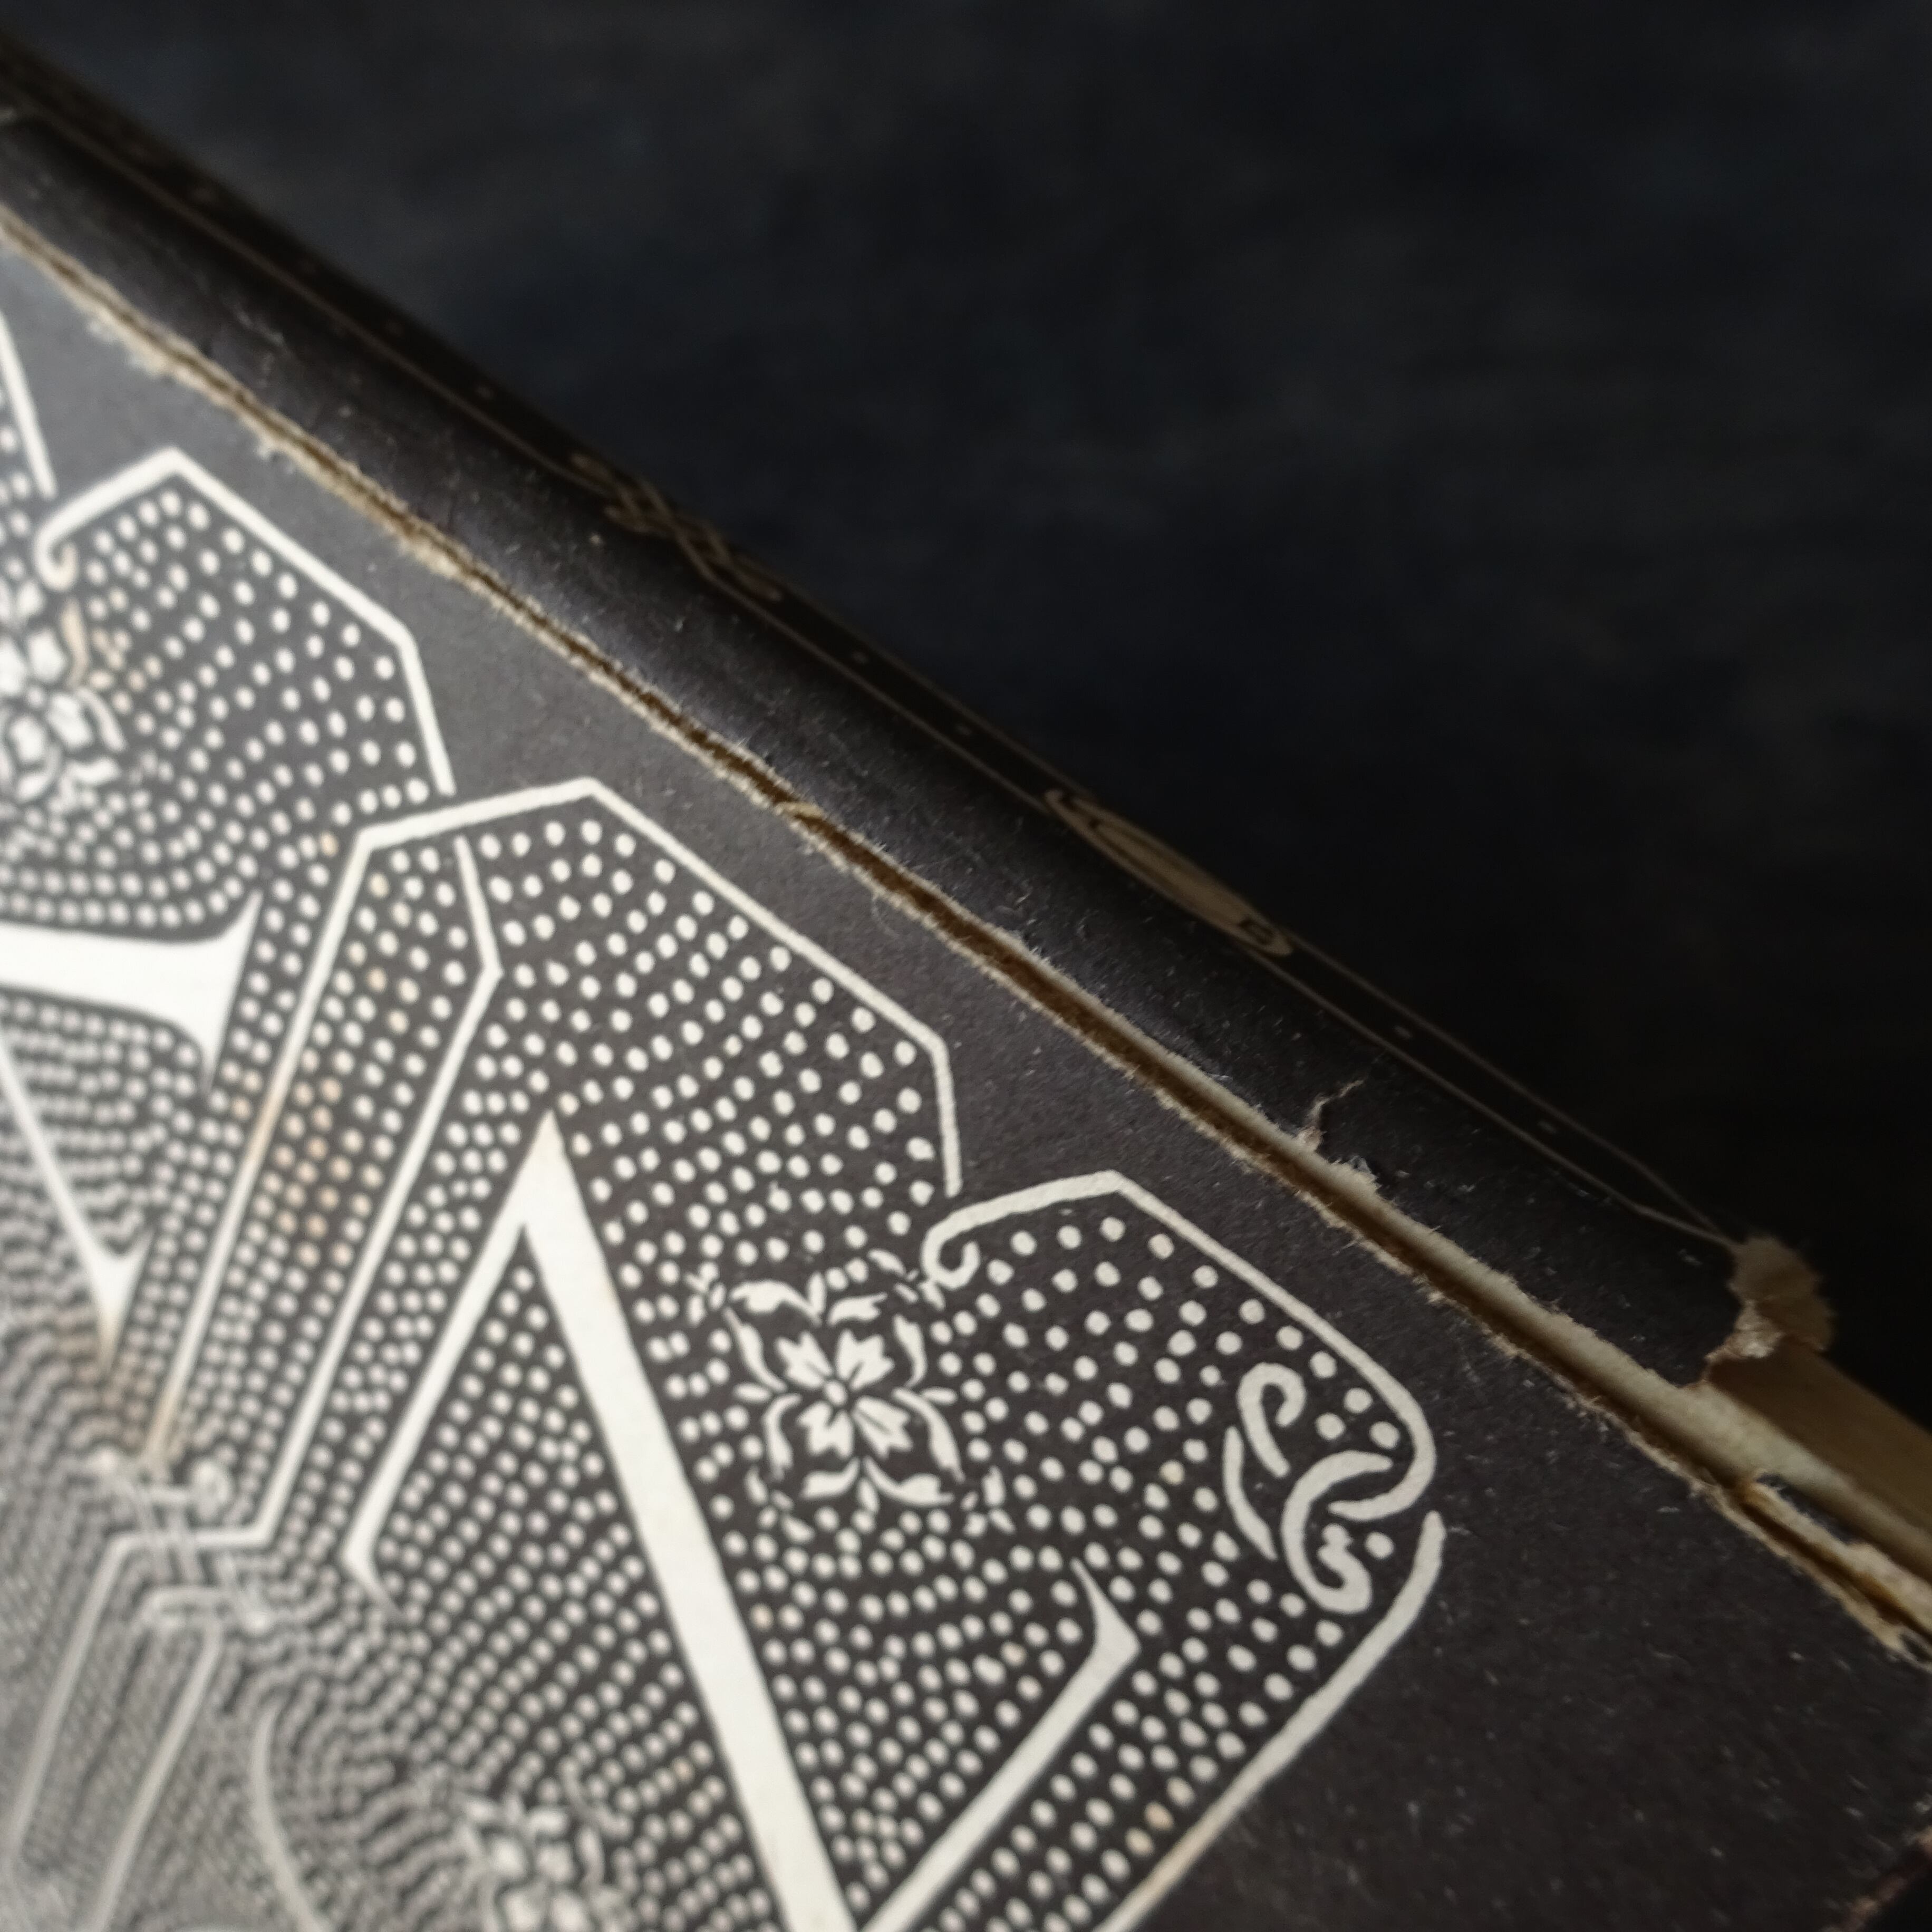 【 Déjà Vendu 】 Ancien livre de Calligraphie en anglais 《A BOOK OF SCRIPTS》Alfred Fairbank